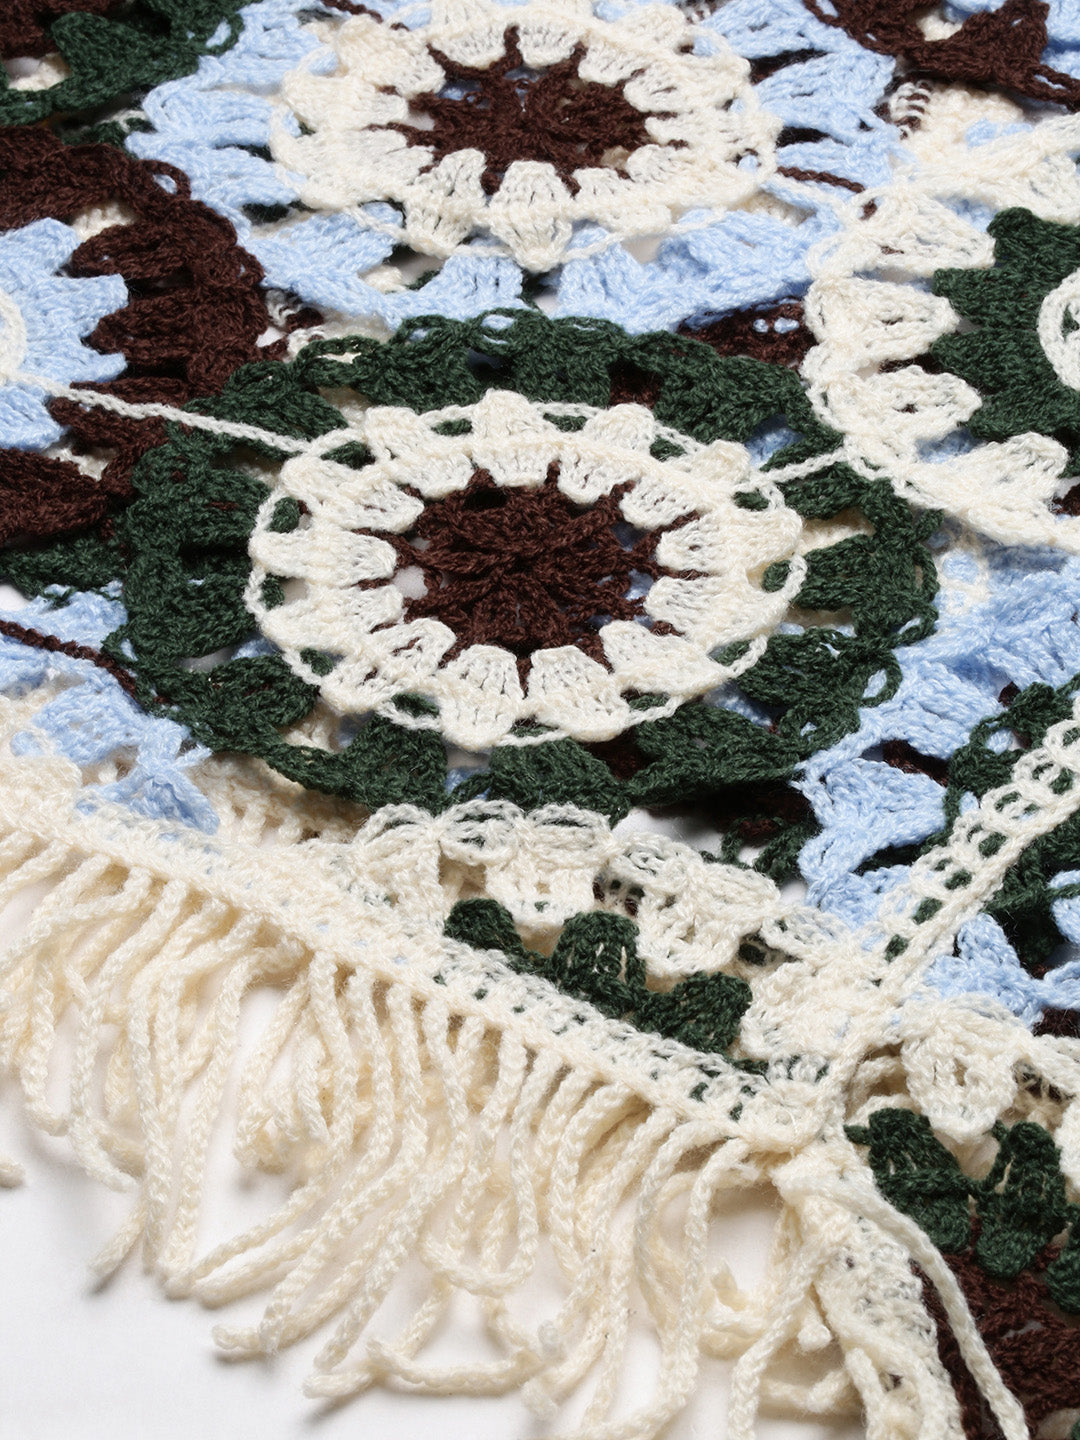 Women Self Design Blue Crochet Crop Top